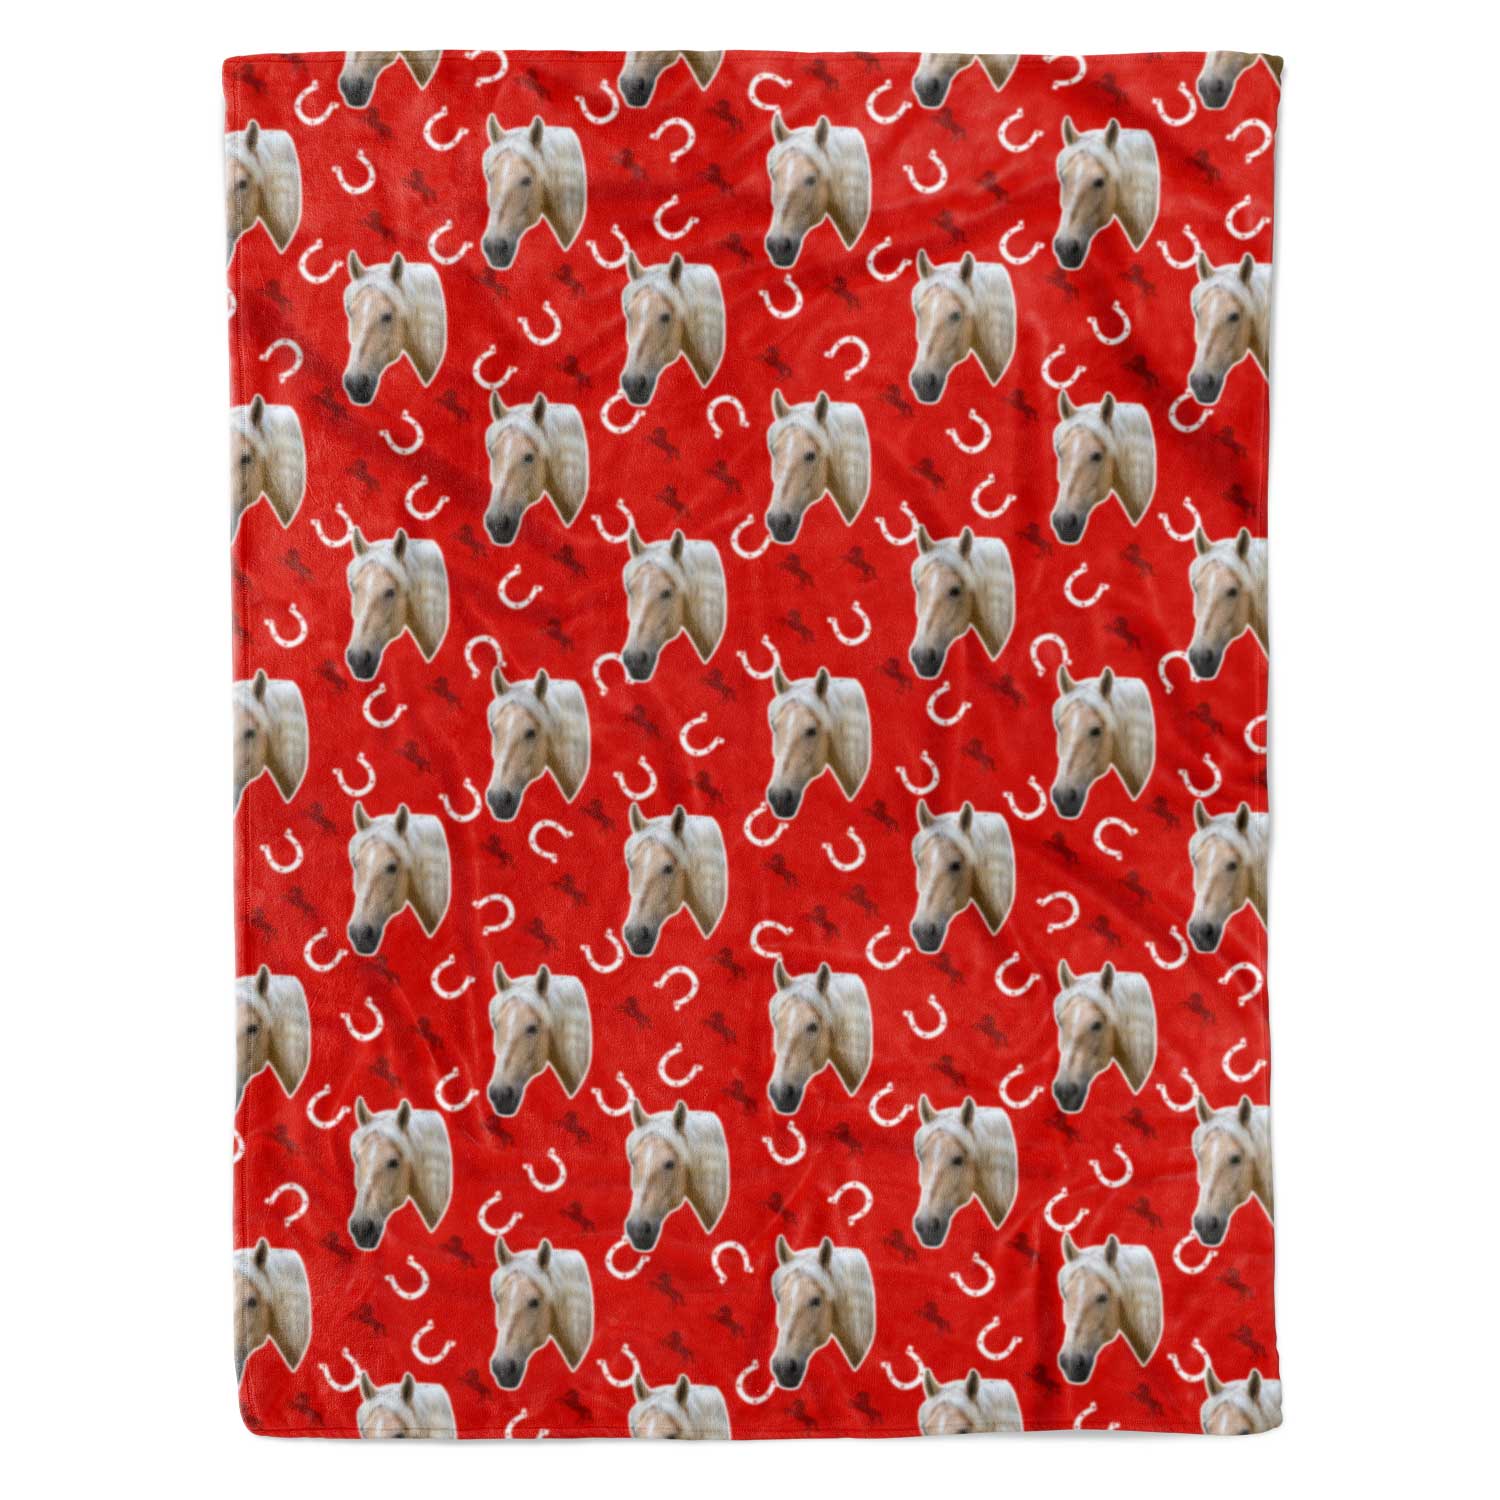 Horse Personalised Blanket